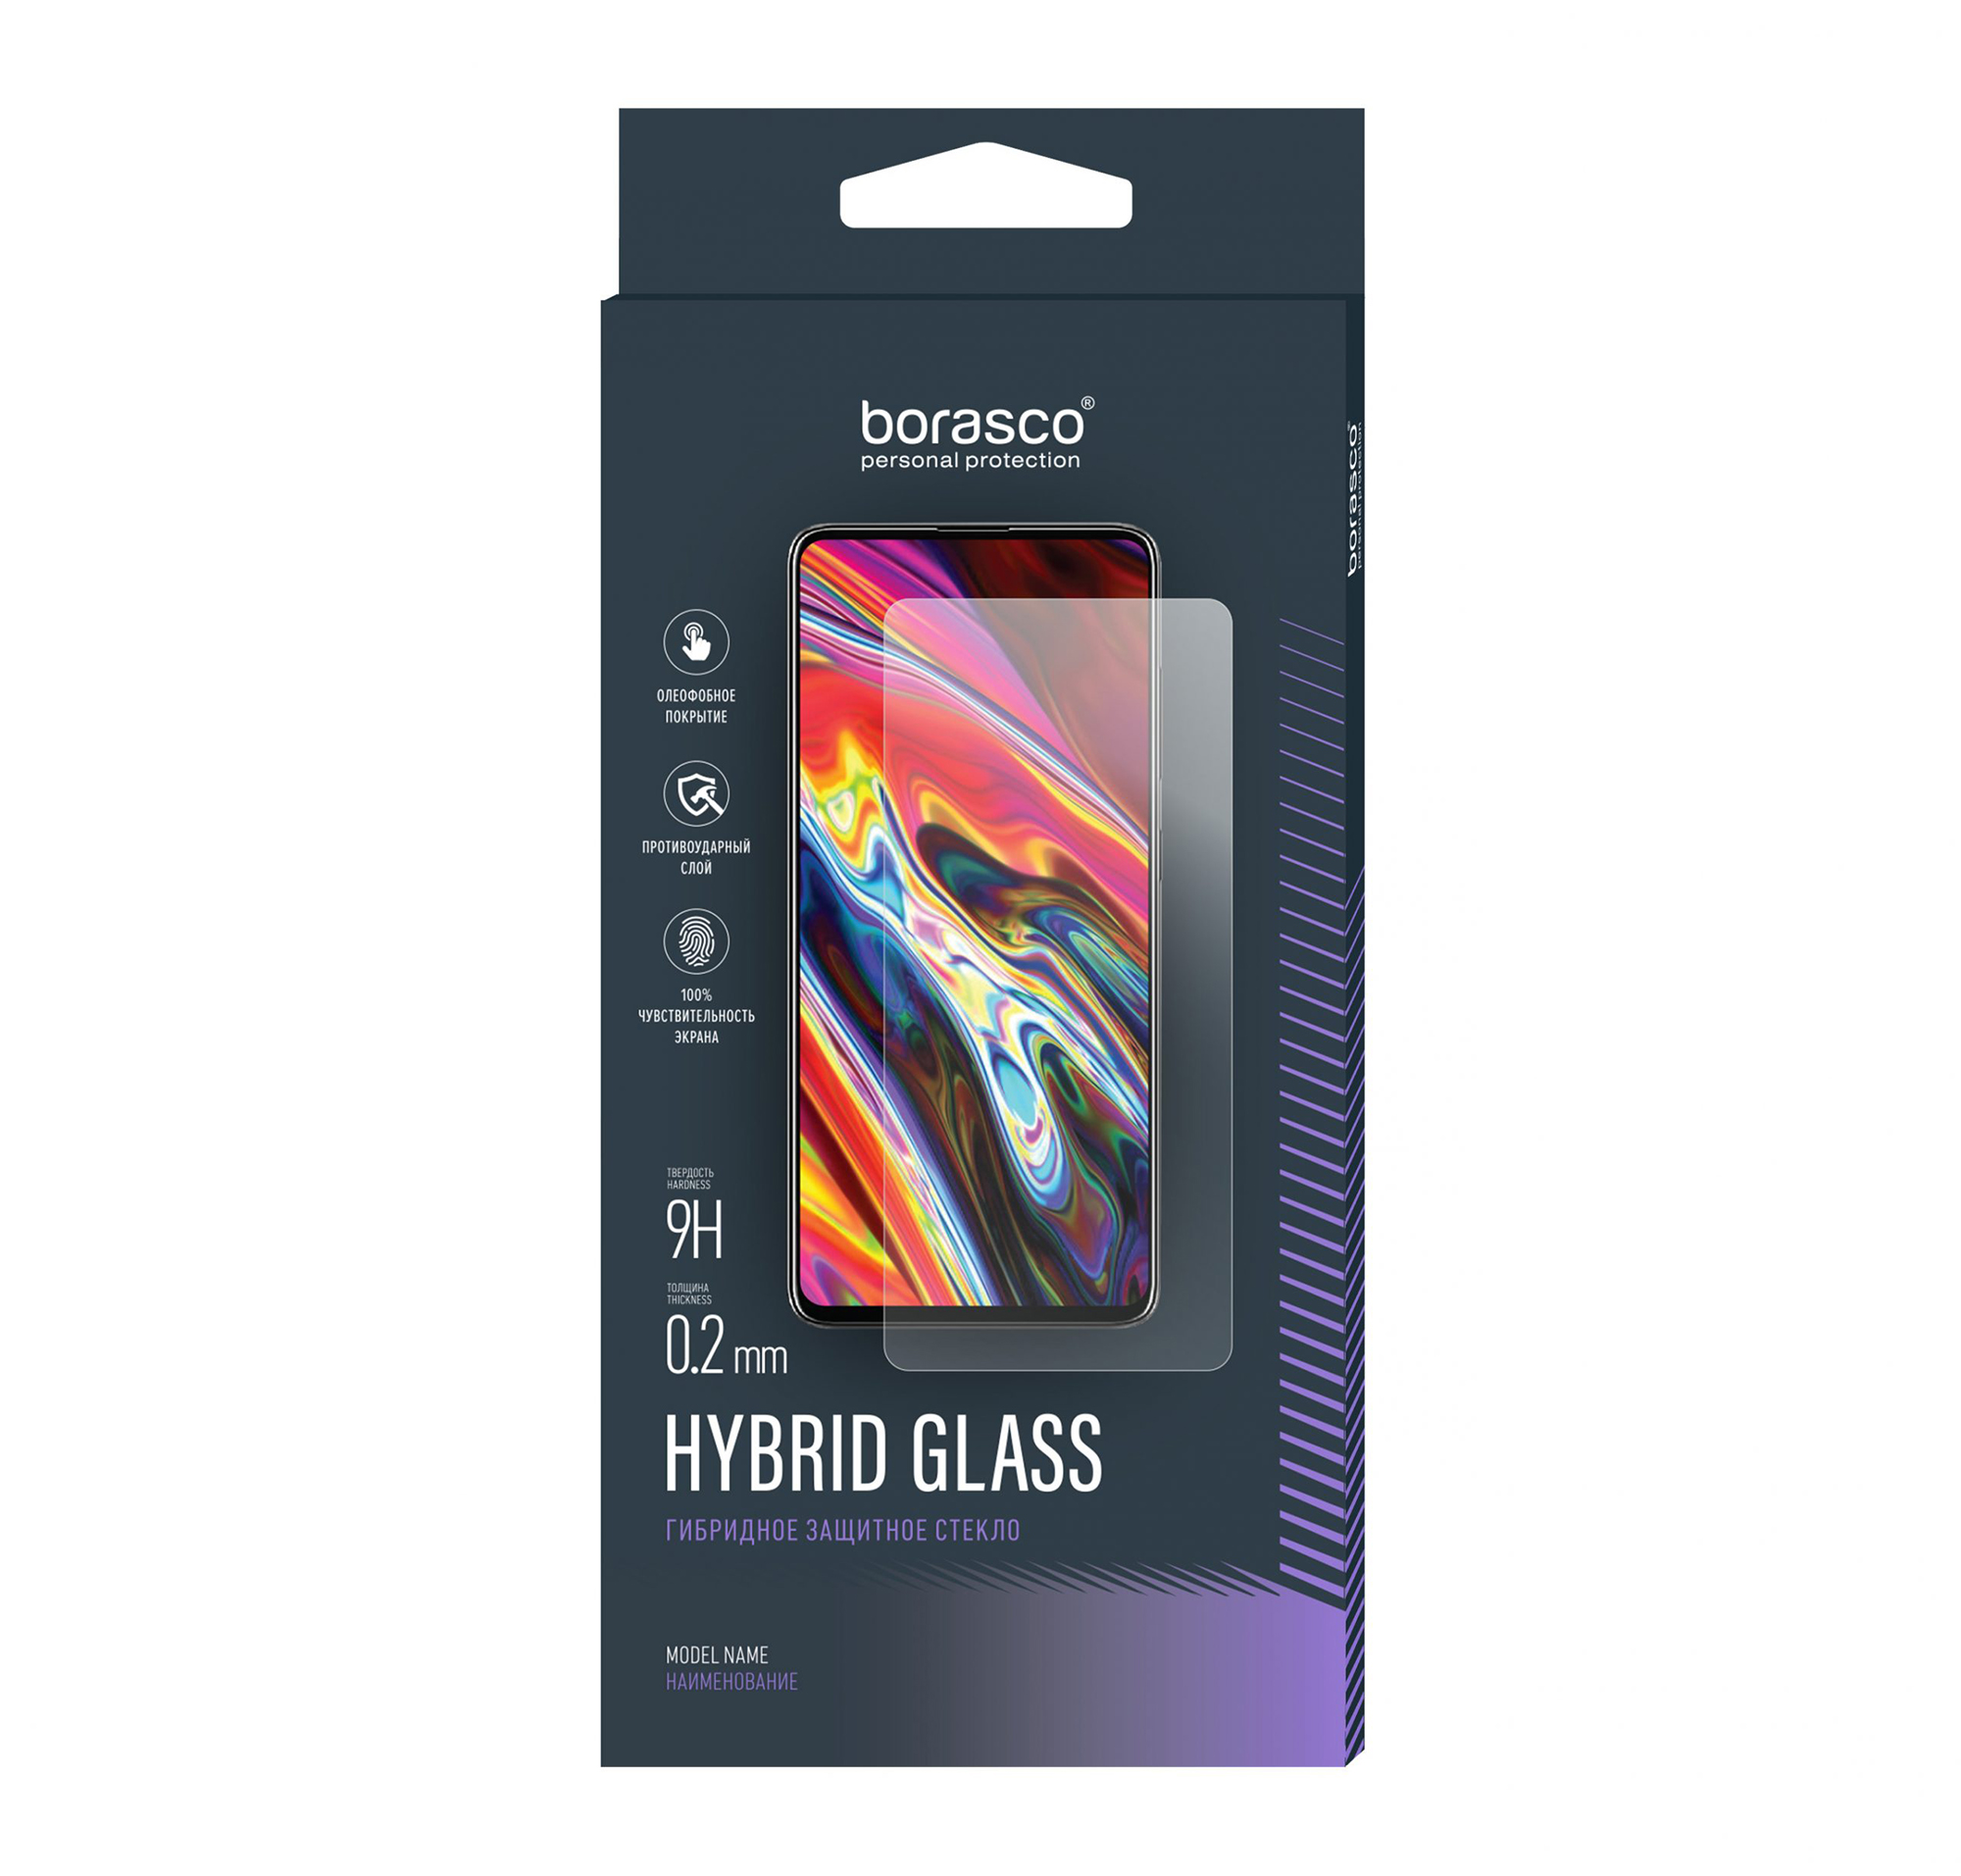 Защитное стекло Hybrid Glass для ZTE Blade L210 пленка защитная zte защитное стекло для телефона zte blade a51